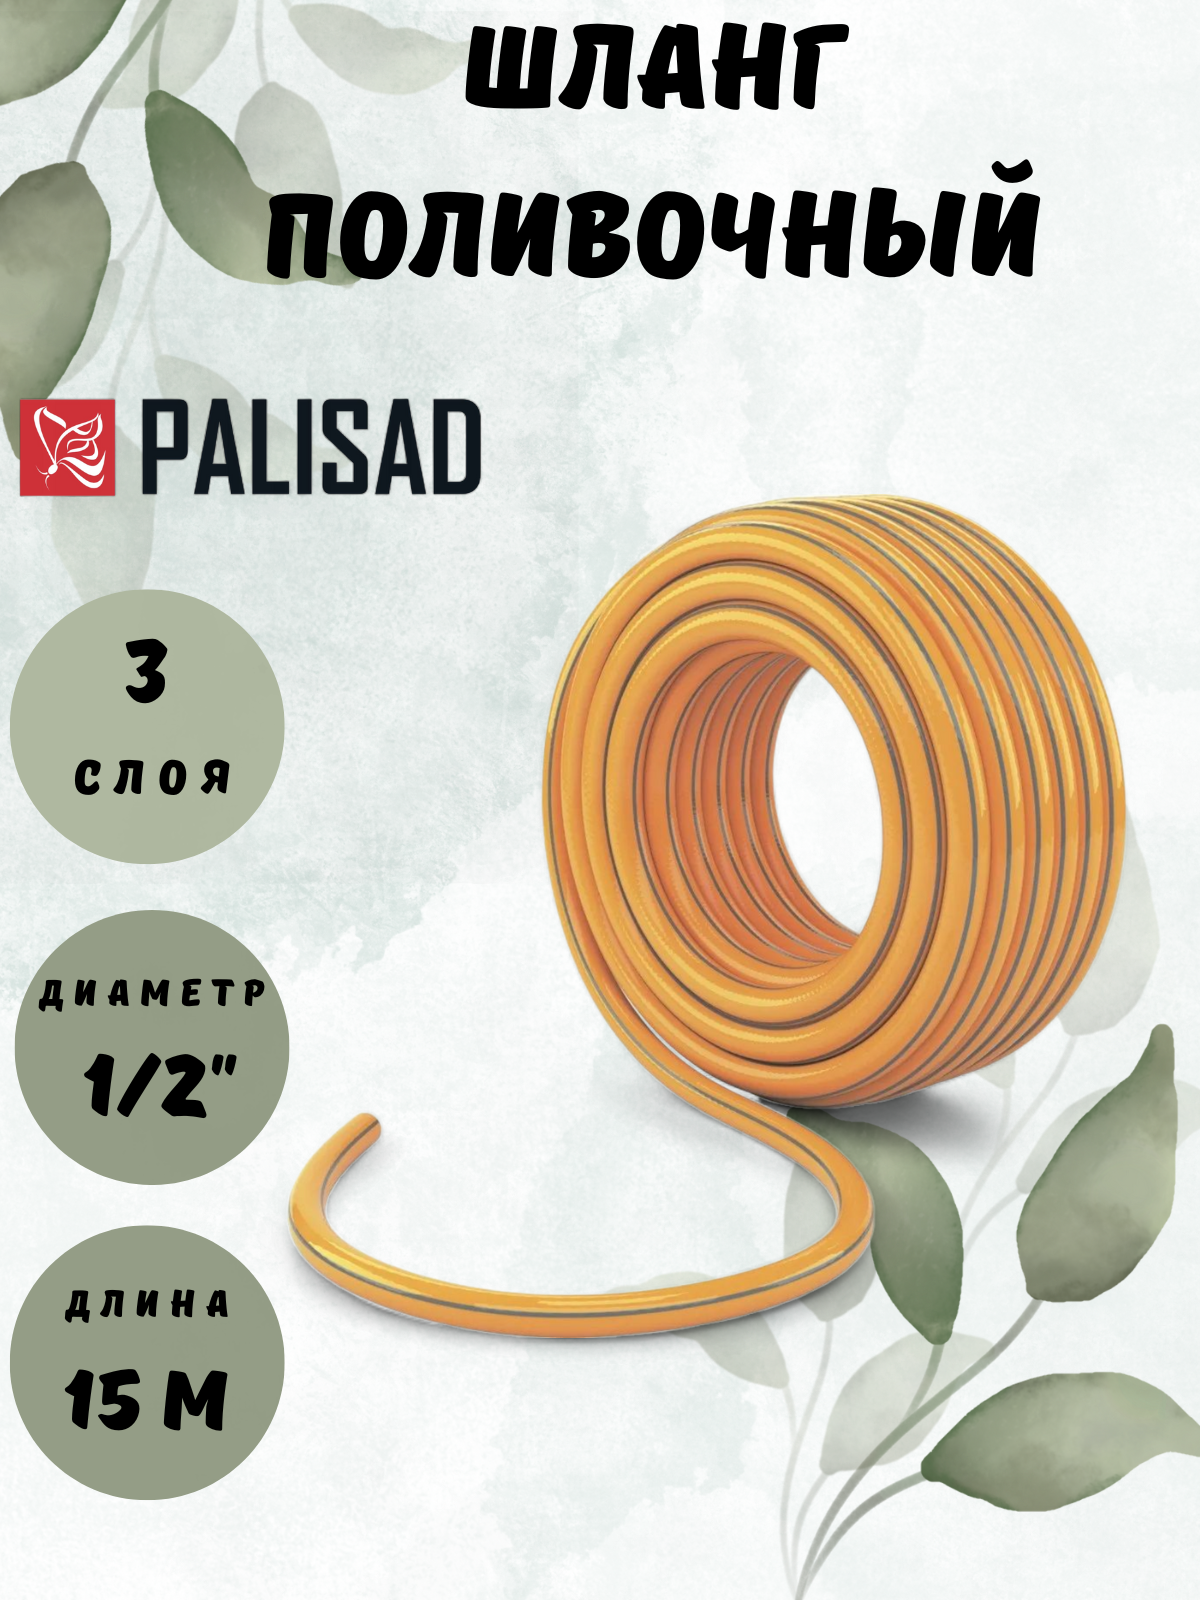 Поливочный армированный трехслойный шланг PALISAD - фото №12